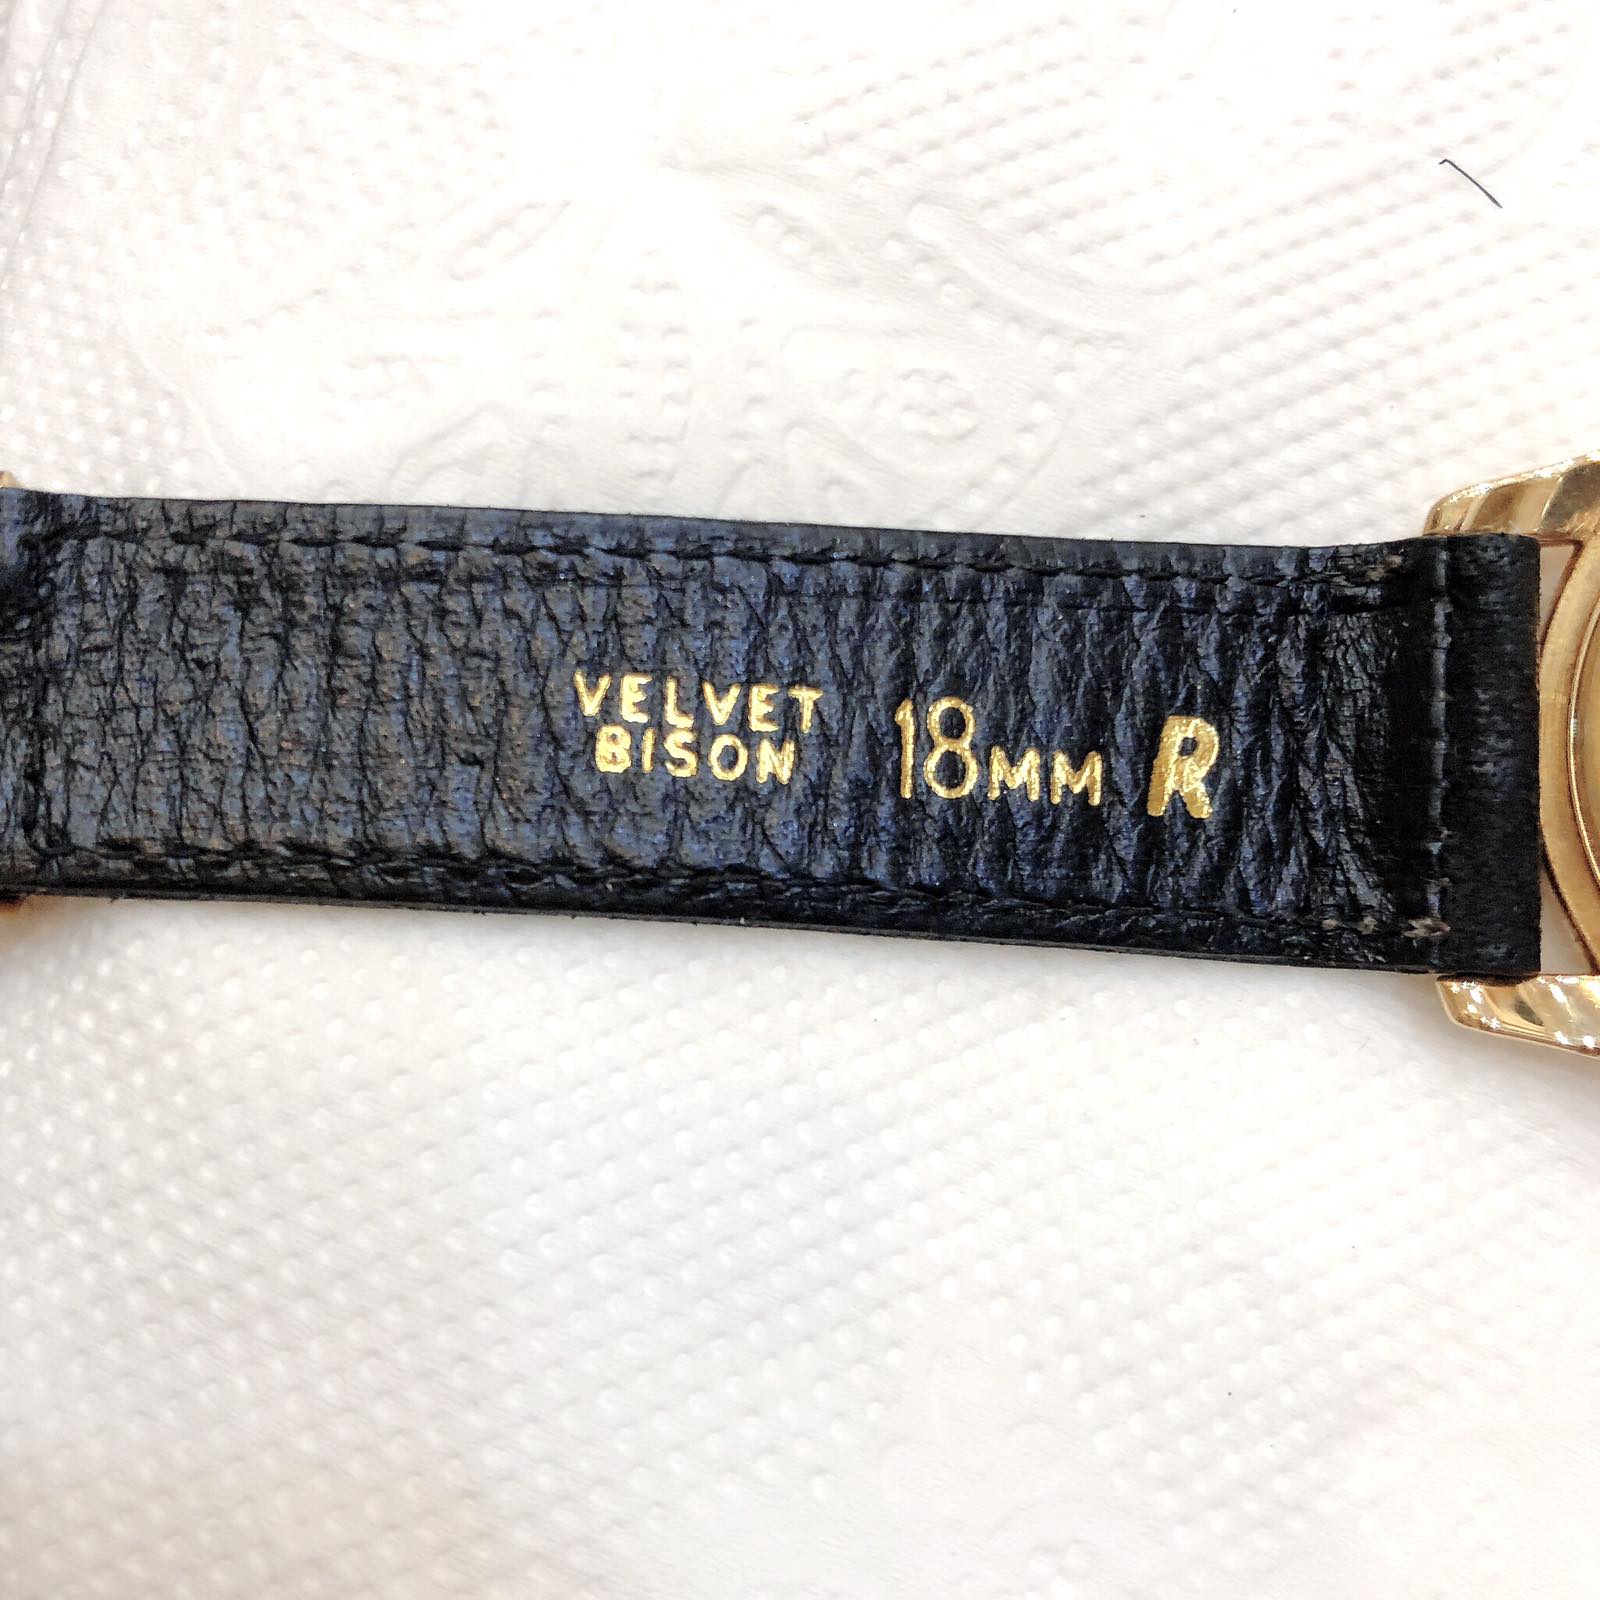 Đồng hồ Tudor - Rolex vàng đúc 18k lên dây chính hãng Thụy Sĩ